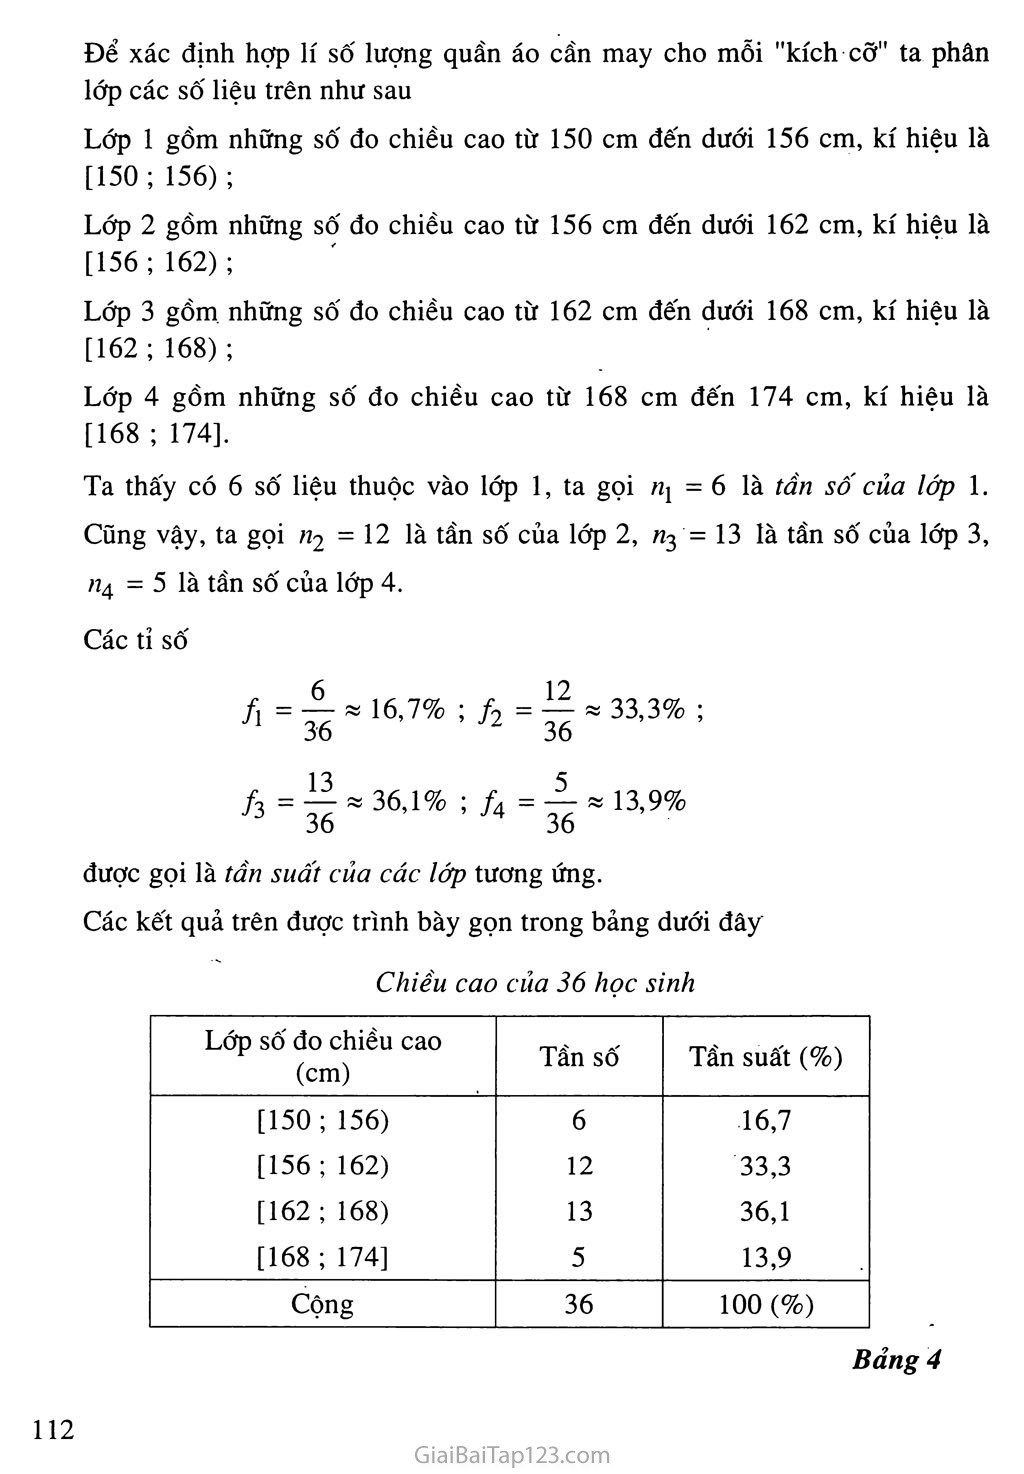 Bài 1. Bảng phân bố tần số và tần suất trang 4